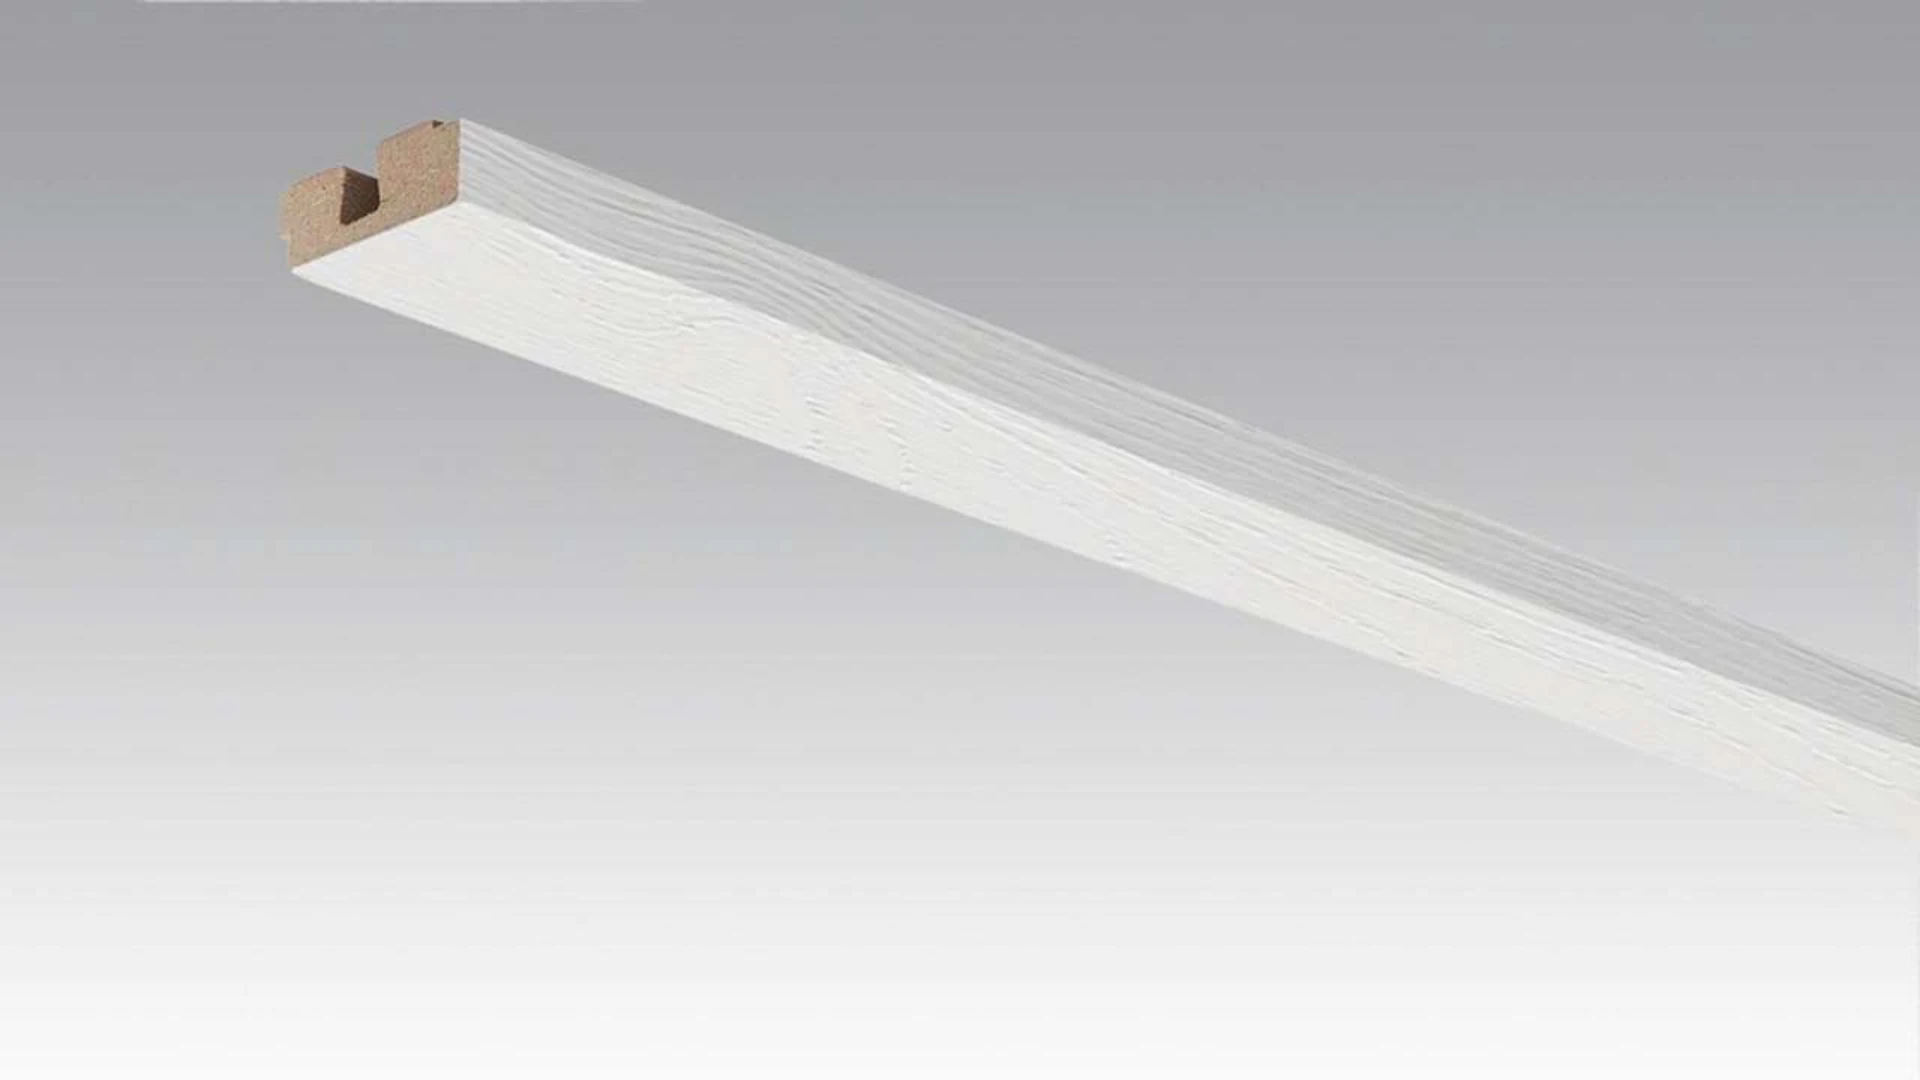 MEISTER Vierkant-Deckenabschlussleiste Mountain Wood white 4205 - 2380 x 40 x 15 mm (200032-2380-04205)